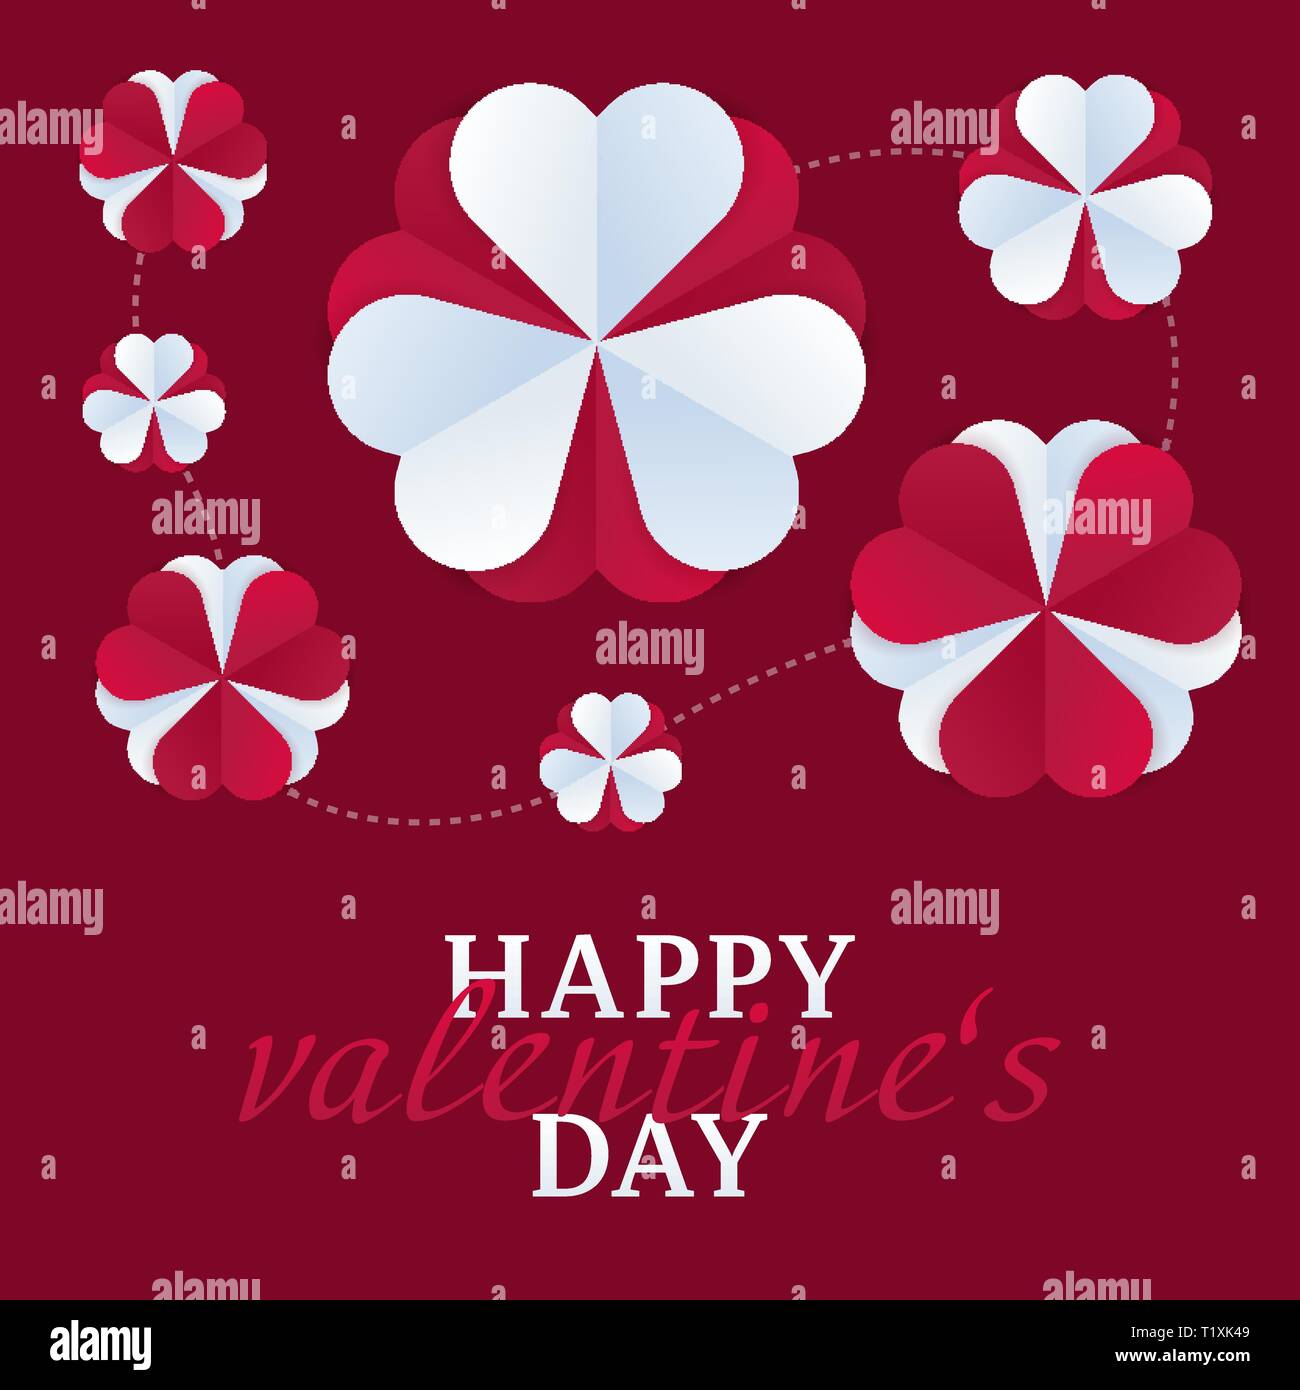 Herz aus Papier star Flower pattern Design template Valentinstag tag der liebe Partei Stock Vektor